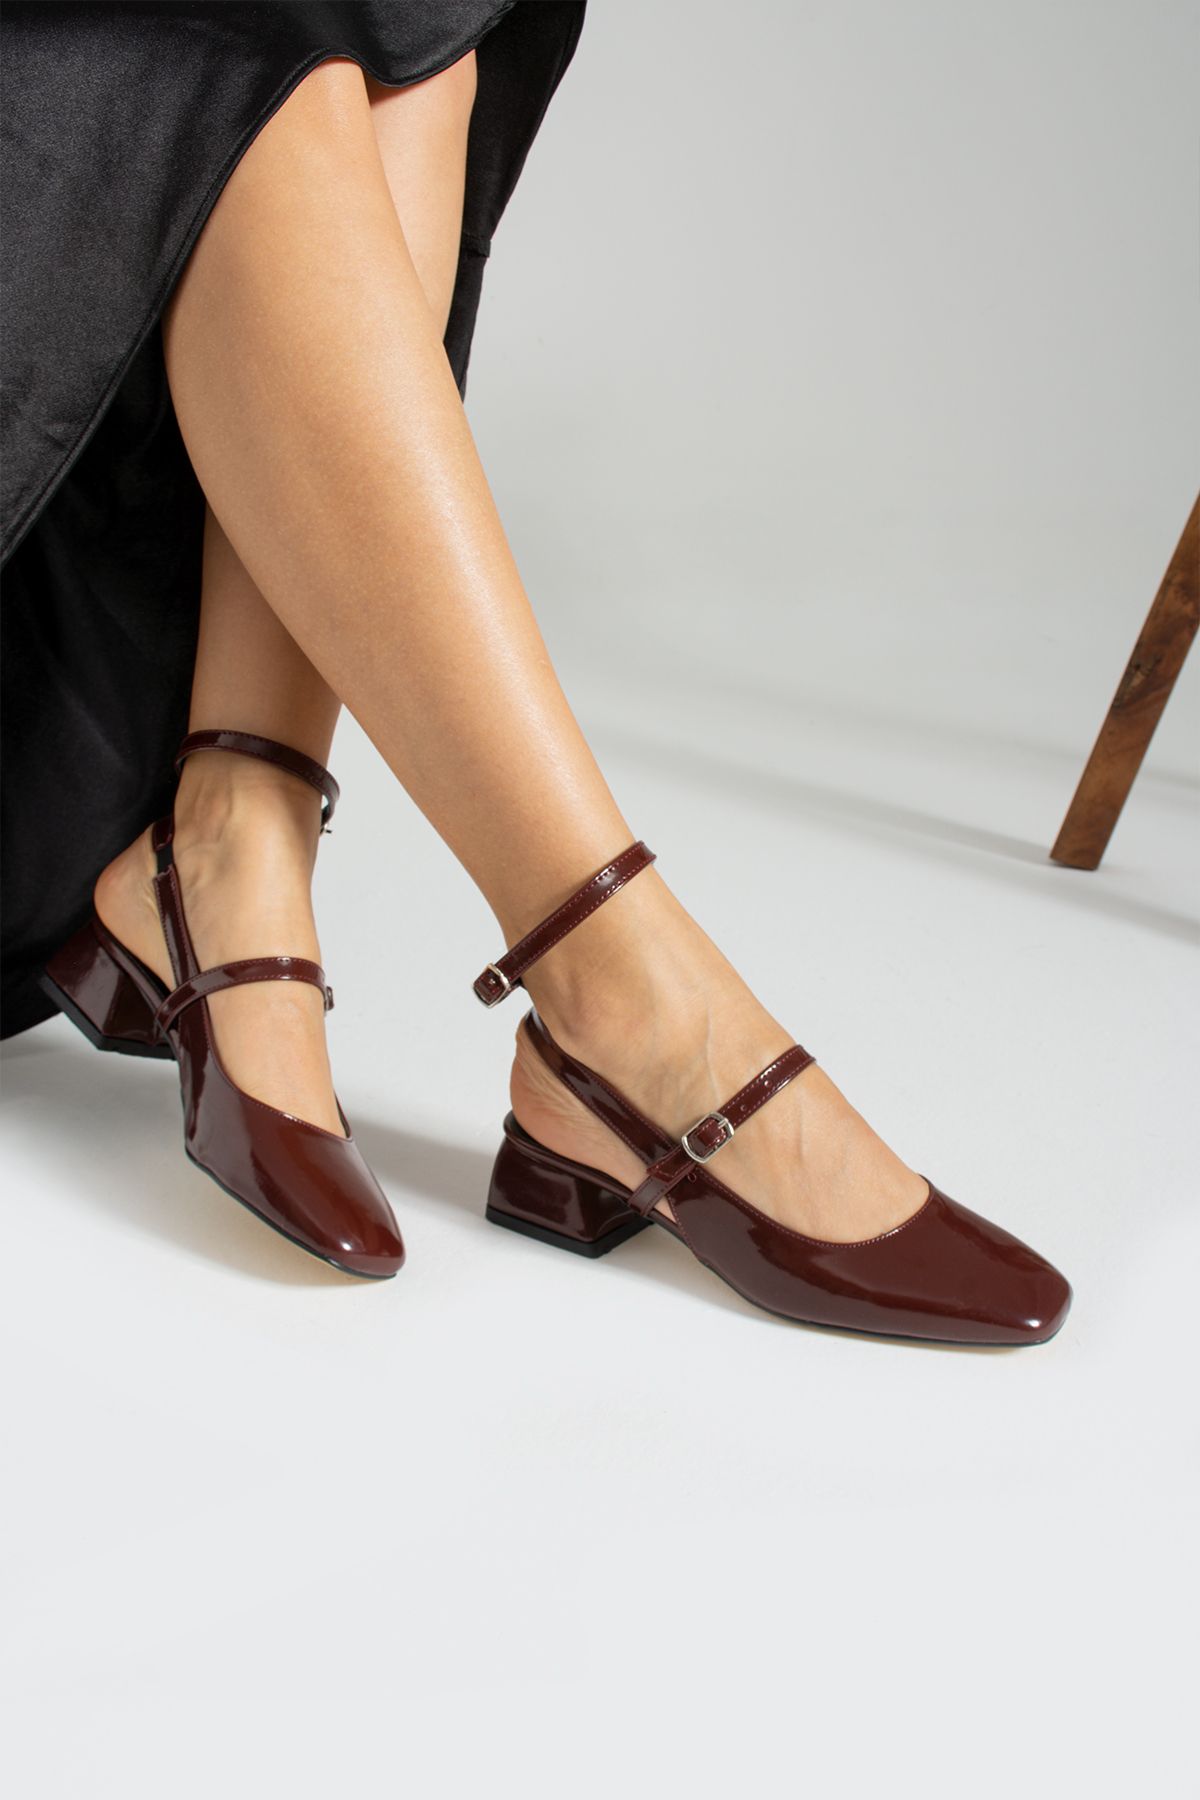 İnan Ayakkabı Kadın Bordo Renk Toka Detaylı Günlük Ayakkabı & Babet (3 Cm Topuk )